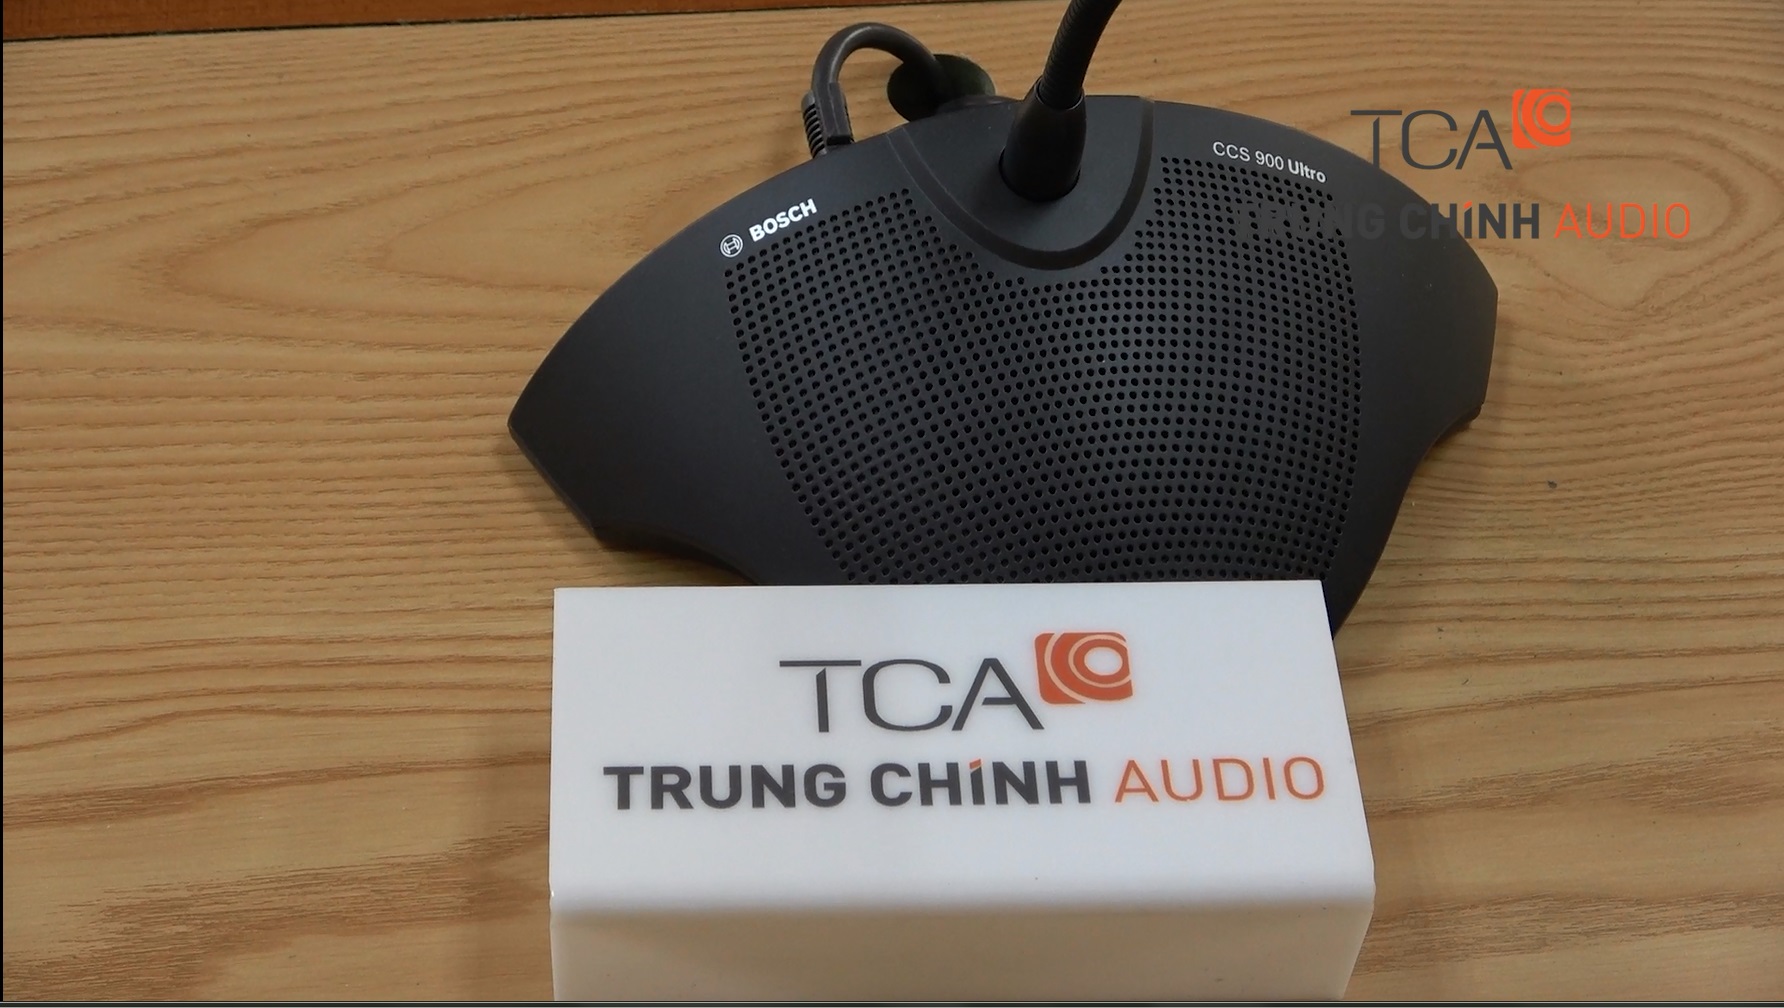 Lắp đặt âm thanh phòng họp giải pháp trực tuyến cho điểm cầu: BHXH huyện Văn Lâm, Hưng Yên